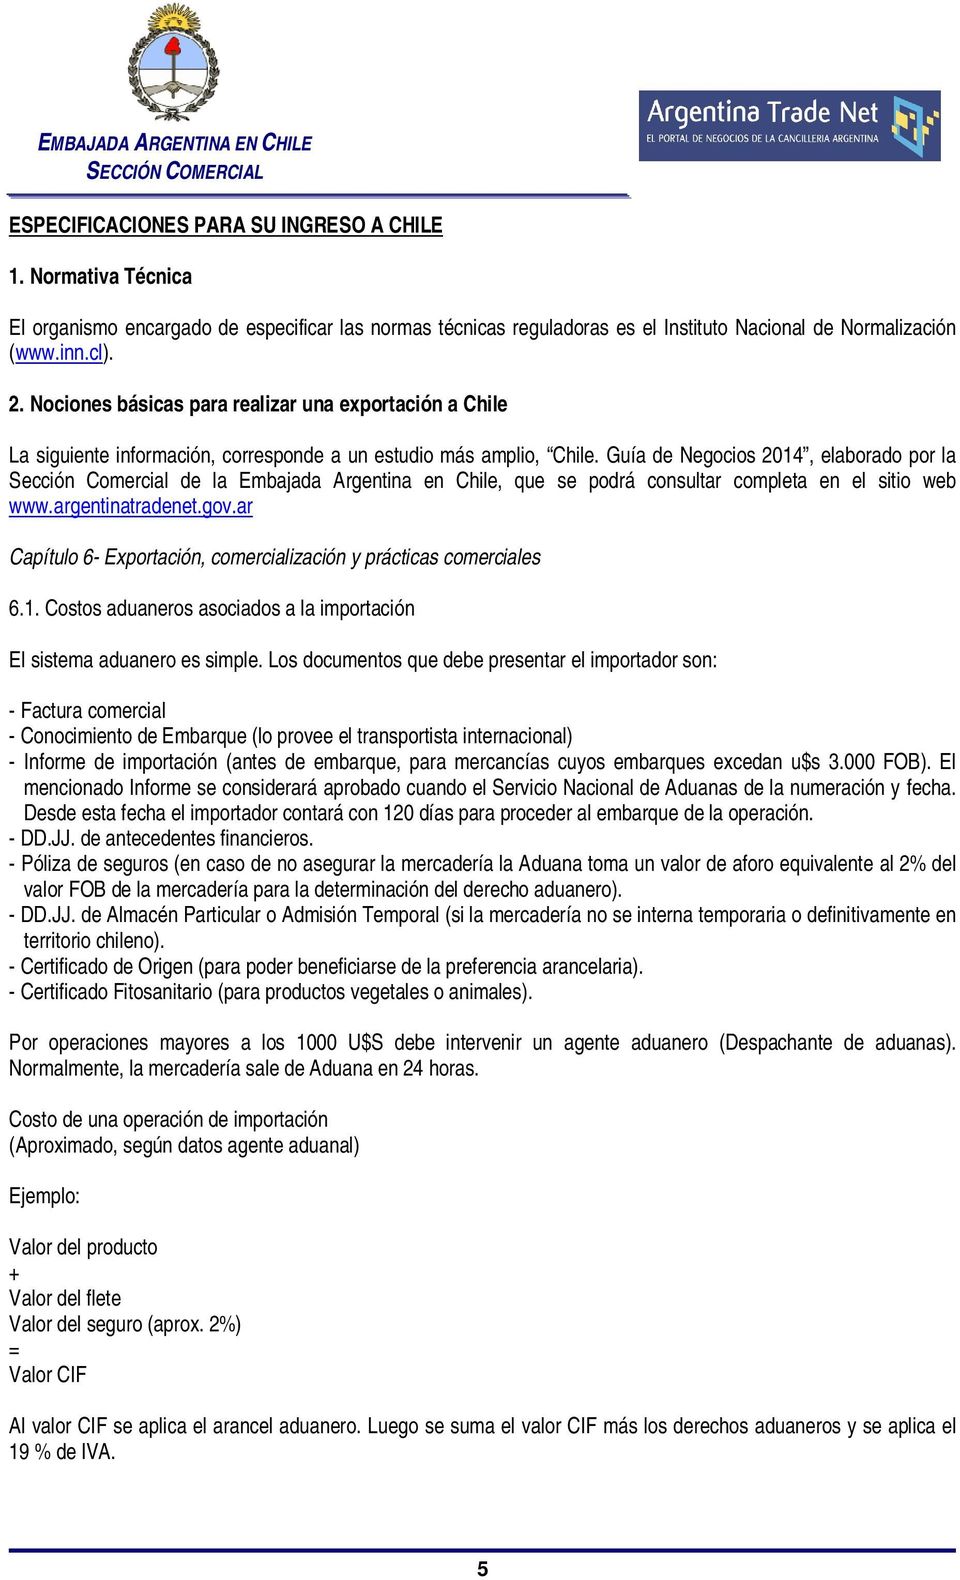 Guía de Negocios 2014, elaborado por la Sección Comercial de la Embajada Argentina en Chile, que se podrá consultar completa en el sitio web www.argentinatradenet.gov.